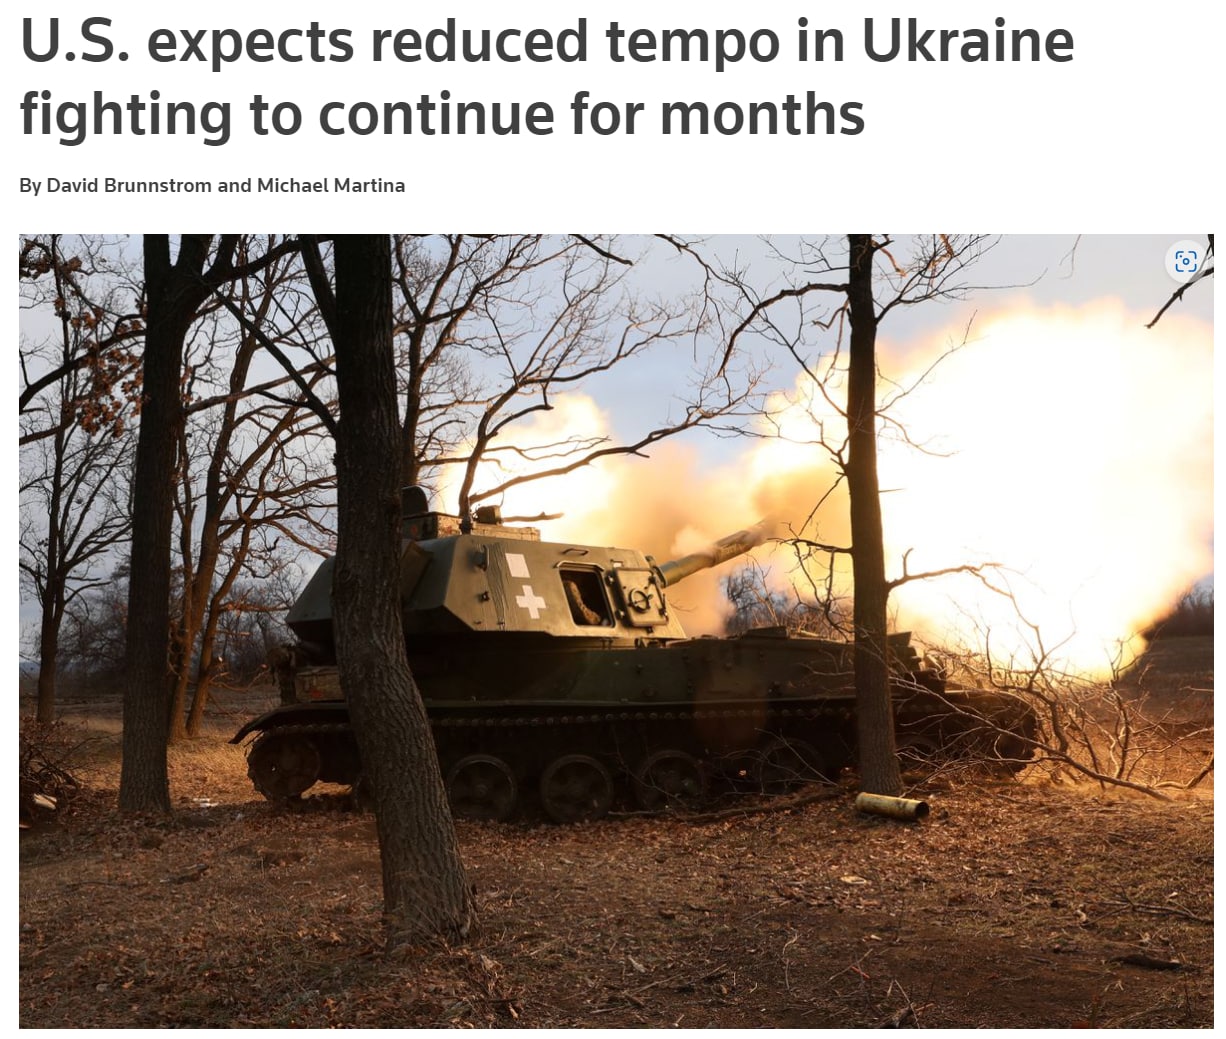 в разведке США считают, что даже в условиях зимы и подмерзания почв боевые действия в Украине до зимы не ускорятся, а замедлятся